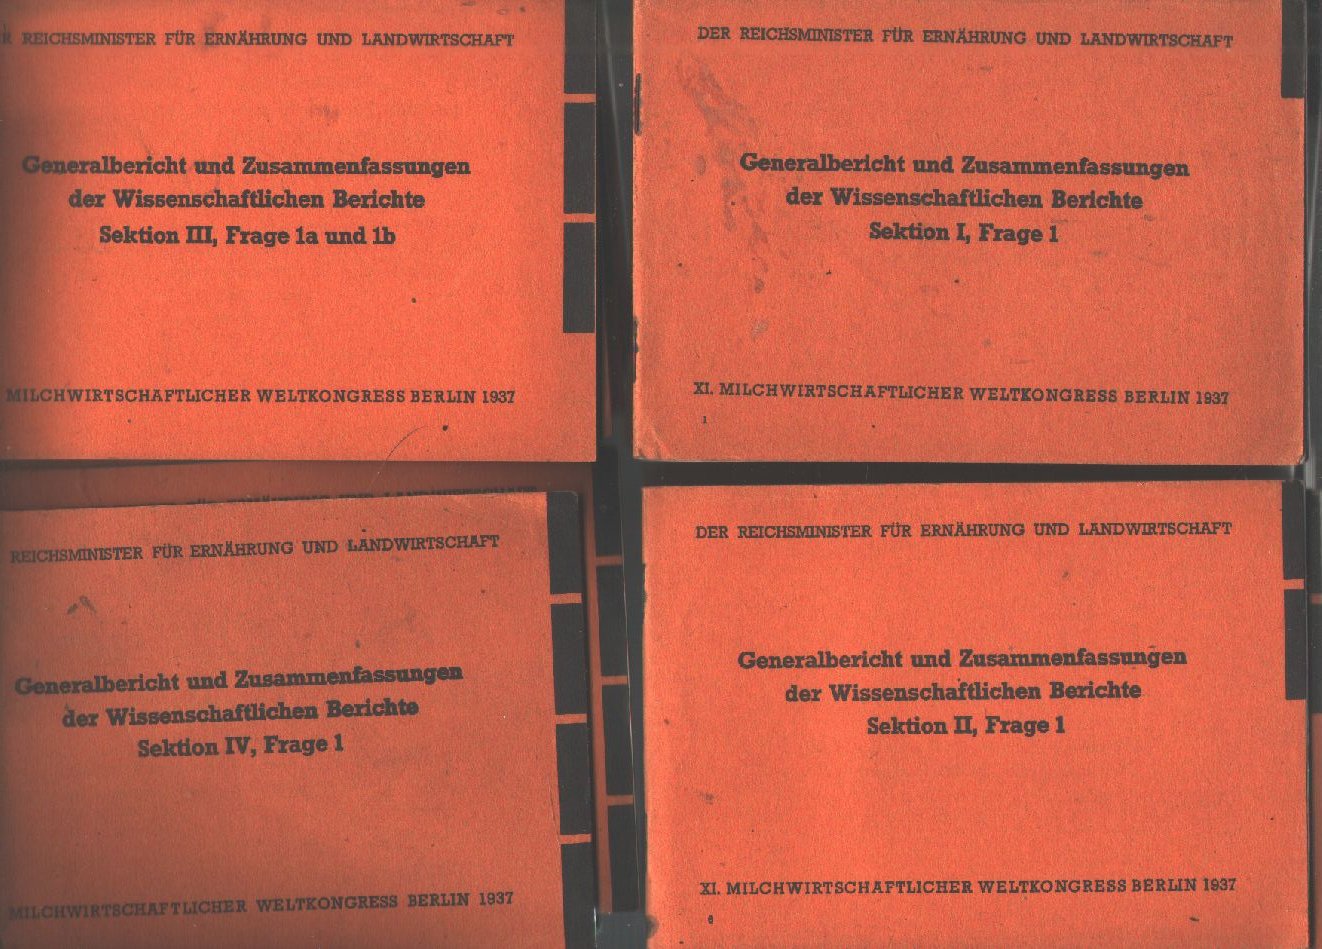 "."  Milchwirtschaftlicher Weltkongress Berlin 1937  Generalbericht und Zusammenfassungen Sektion 1 - 4 